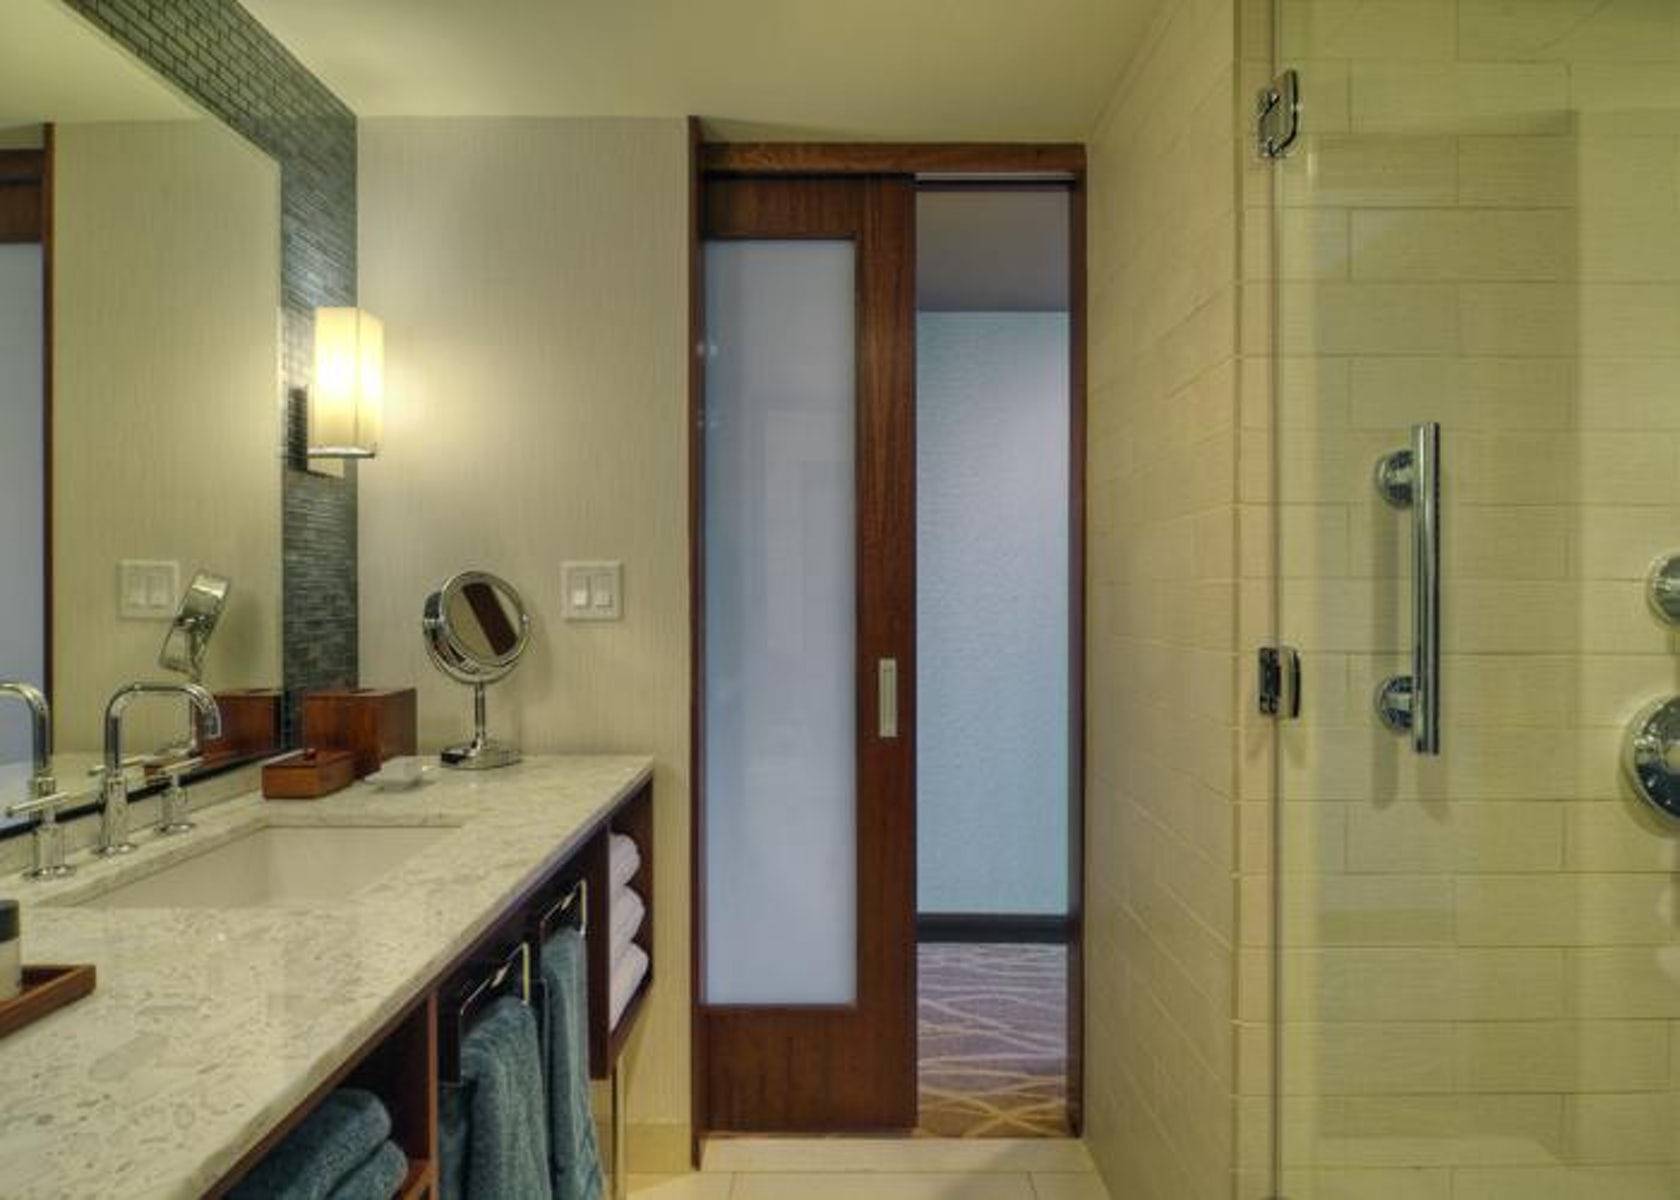 Двери в ванной комнате фото. Раздвижные двери в ванную комнату. Раздвижная дверь в ванную. Откатная дверь в ванную комнату. Раздвижная дверь в санузел.